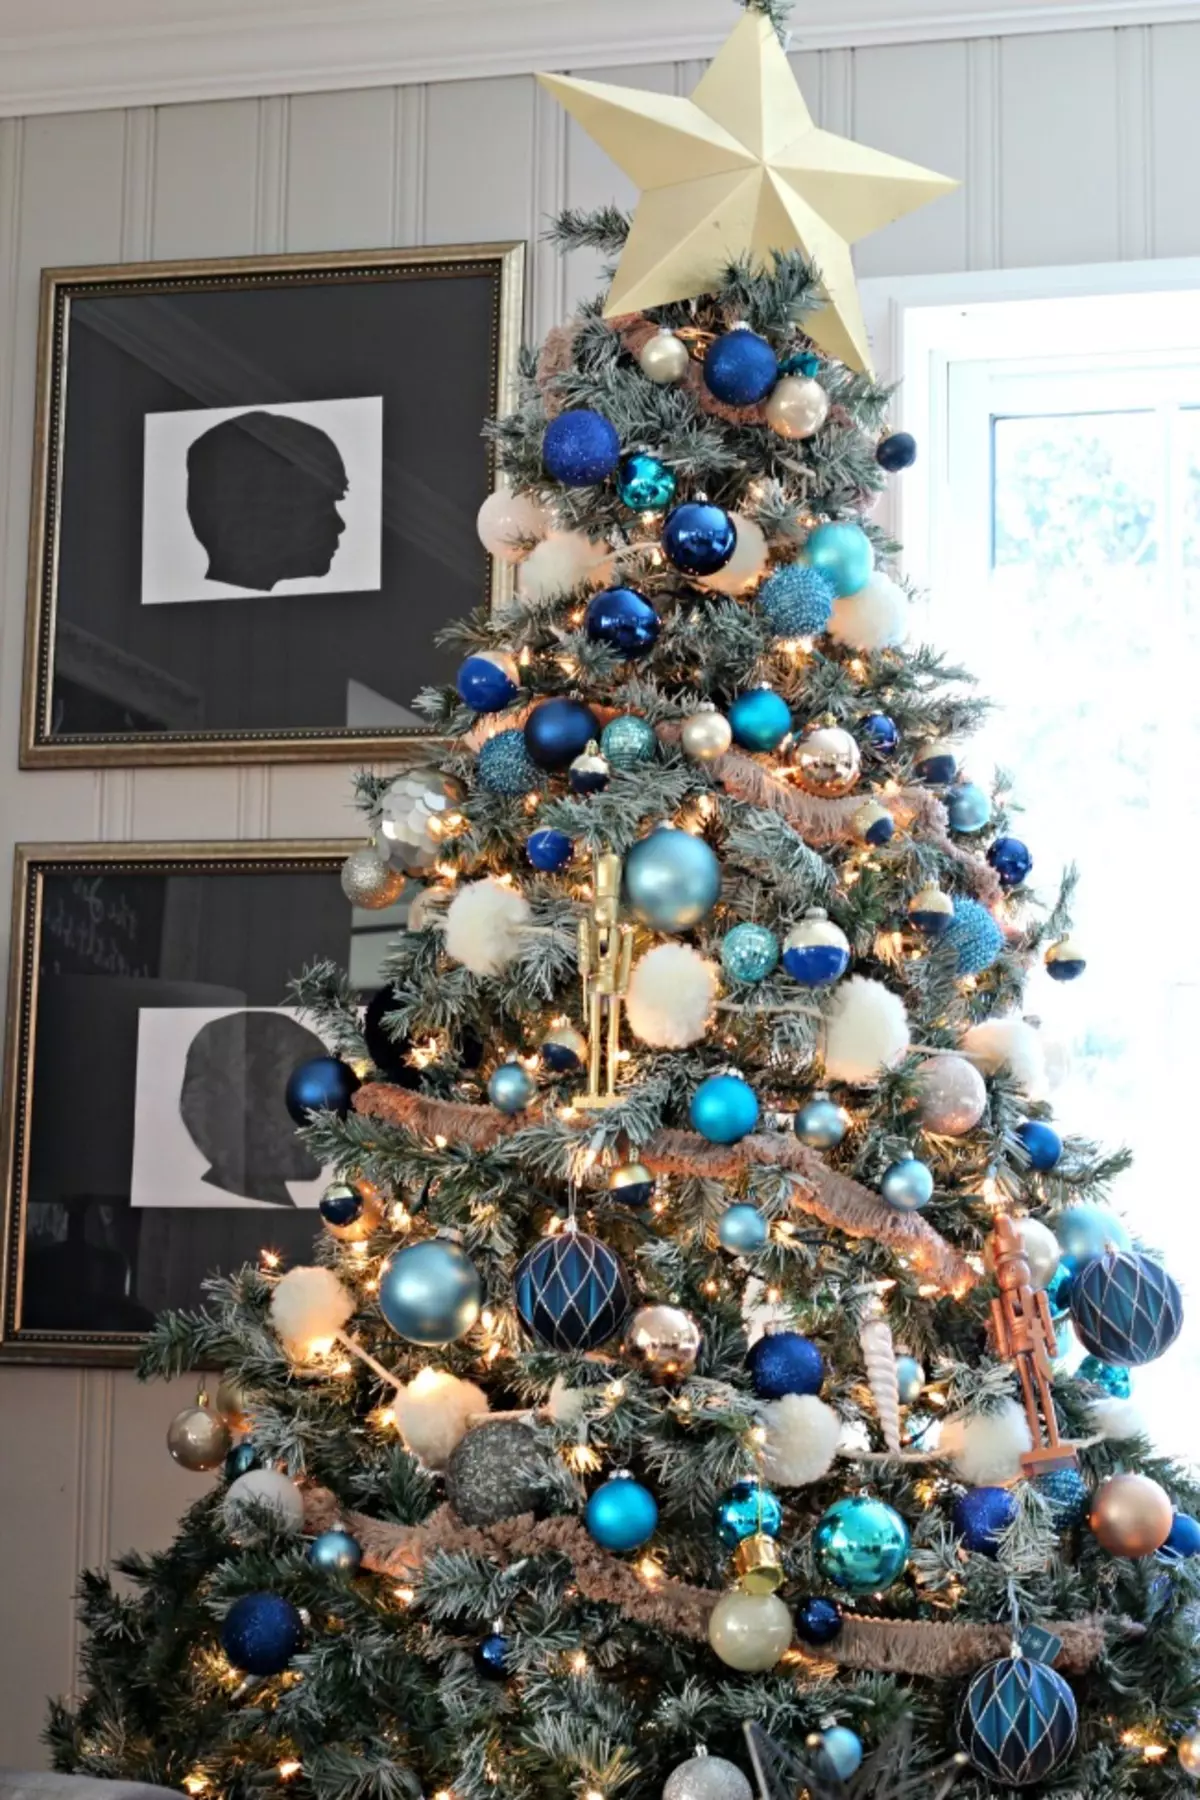 Làm thế nào để trang trí cây Giáng sinh màu xanh lam? 30 ảnh Làm thế nào để ăn mặc với những quả bóng và các trang trí khác trong tông màu xanh và bạc? 7627_9